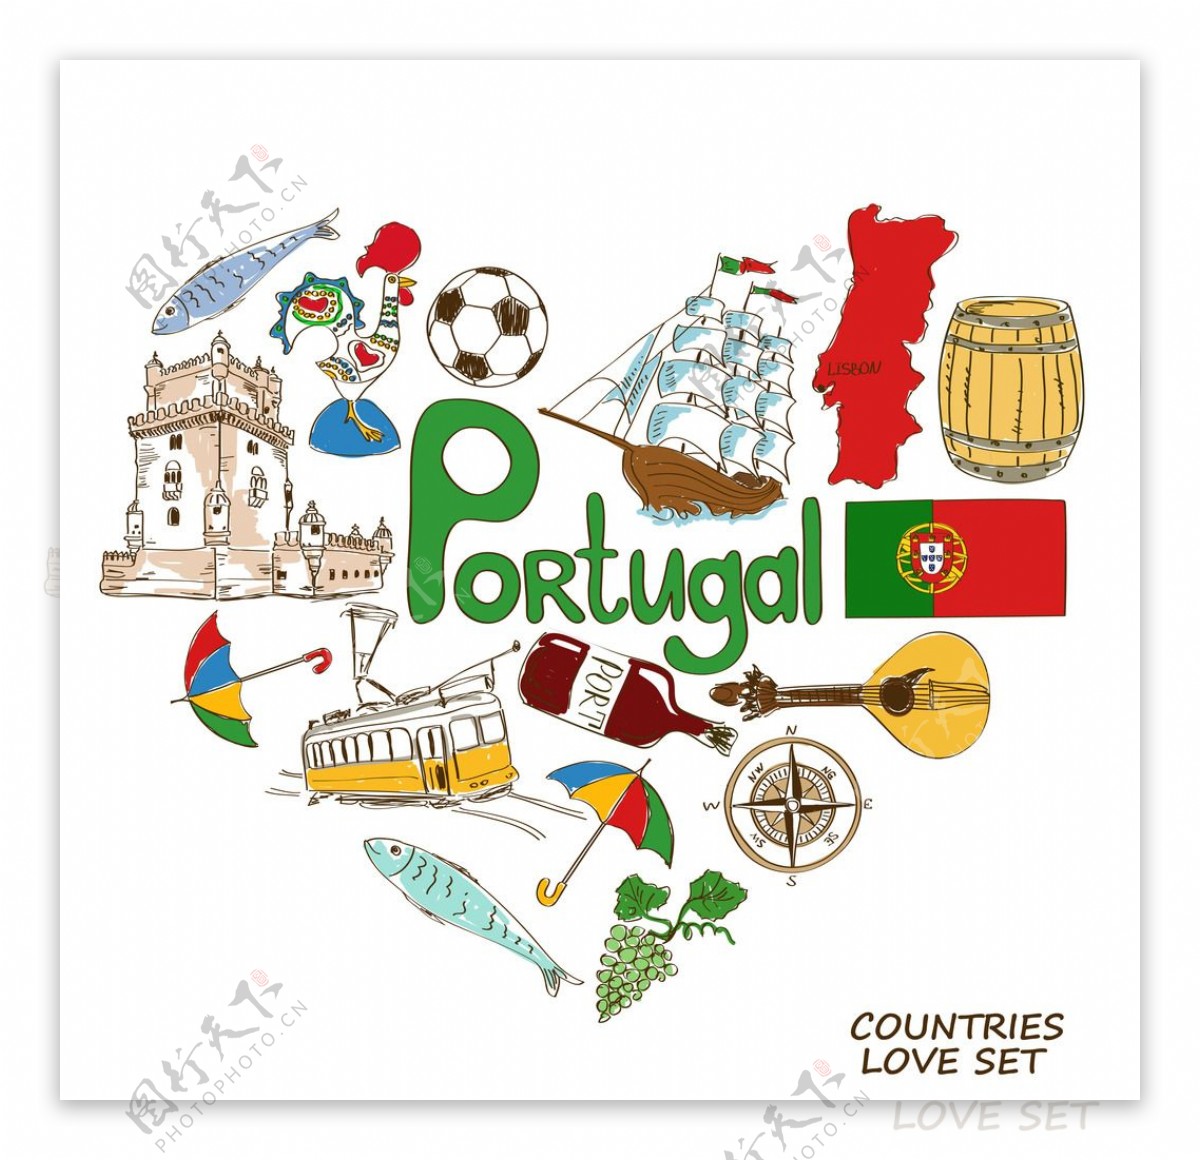 葡萄牙国家元素